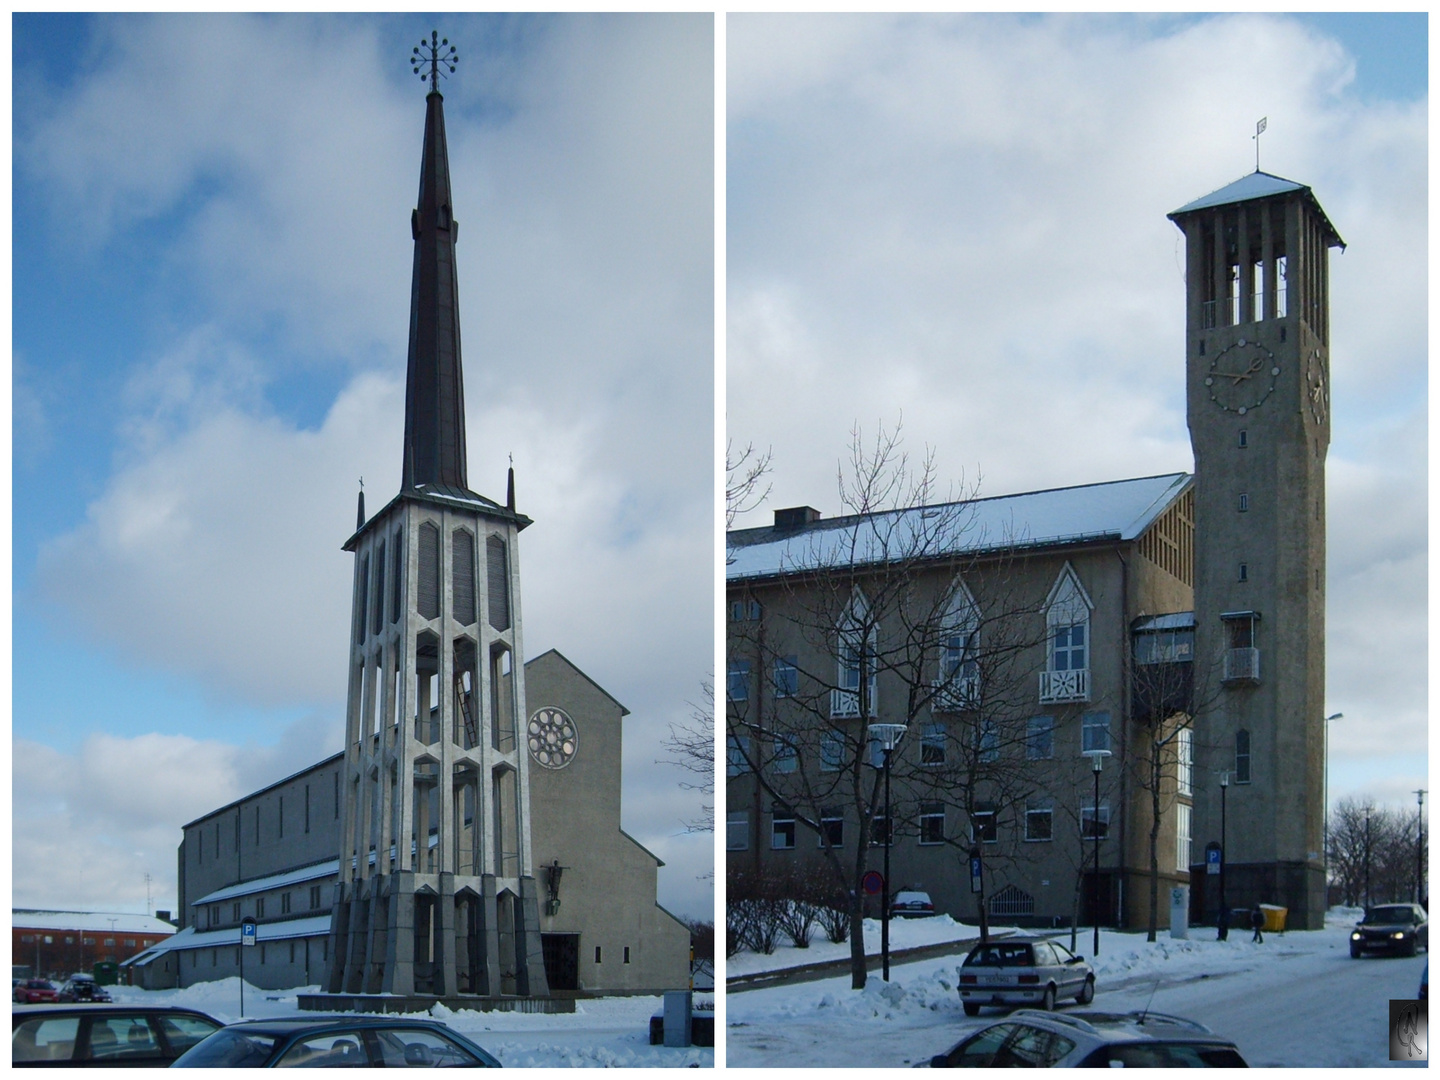 Bodø Domkirche und Rathaus